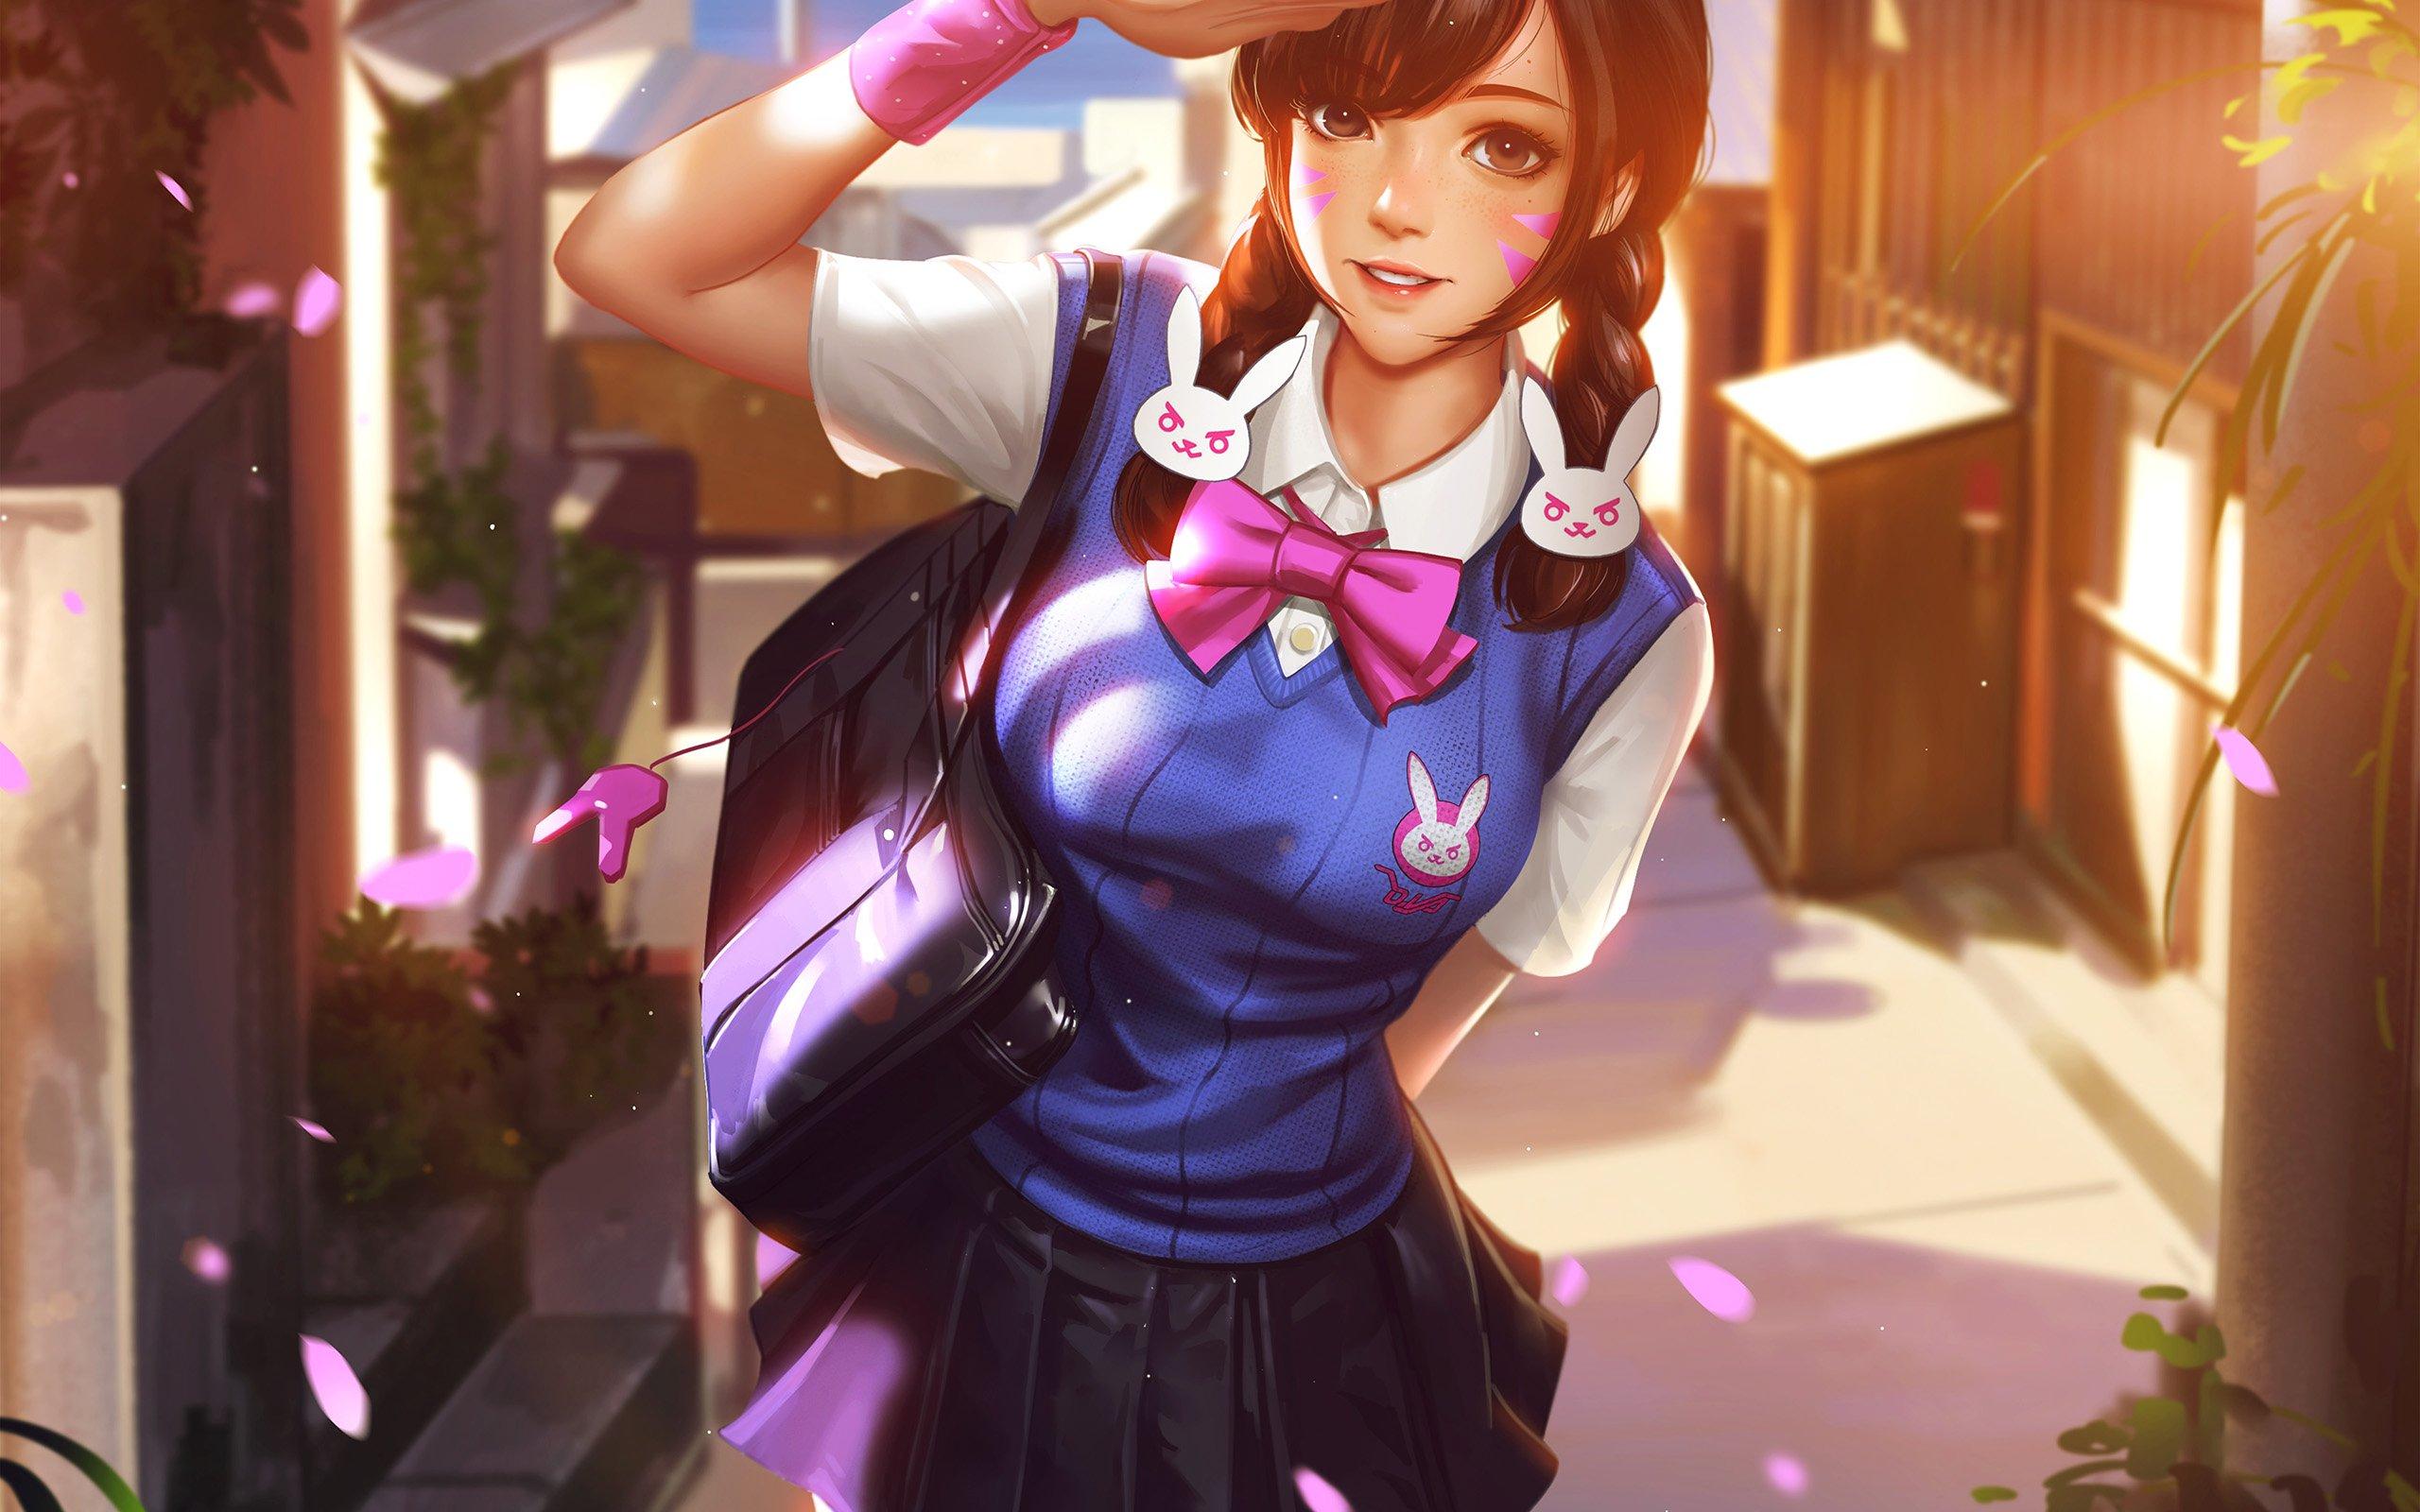 Anime gamer girl wallpaper hd